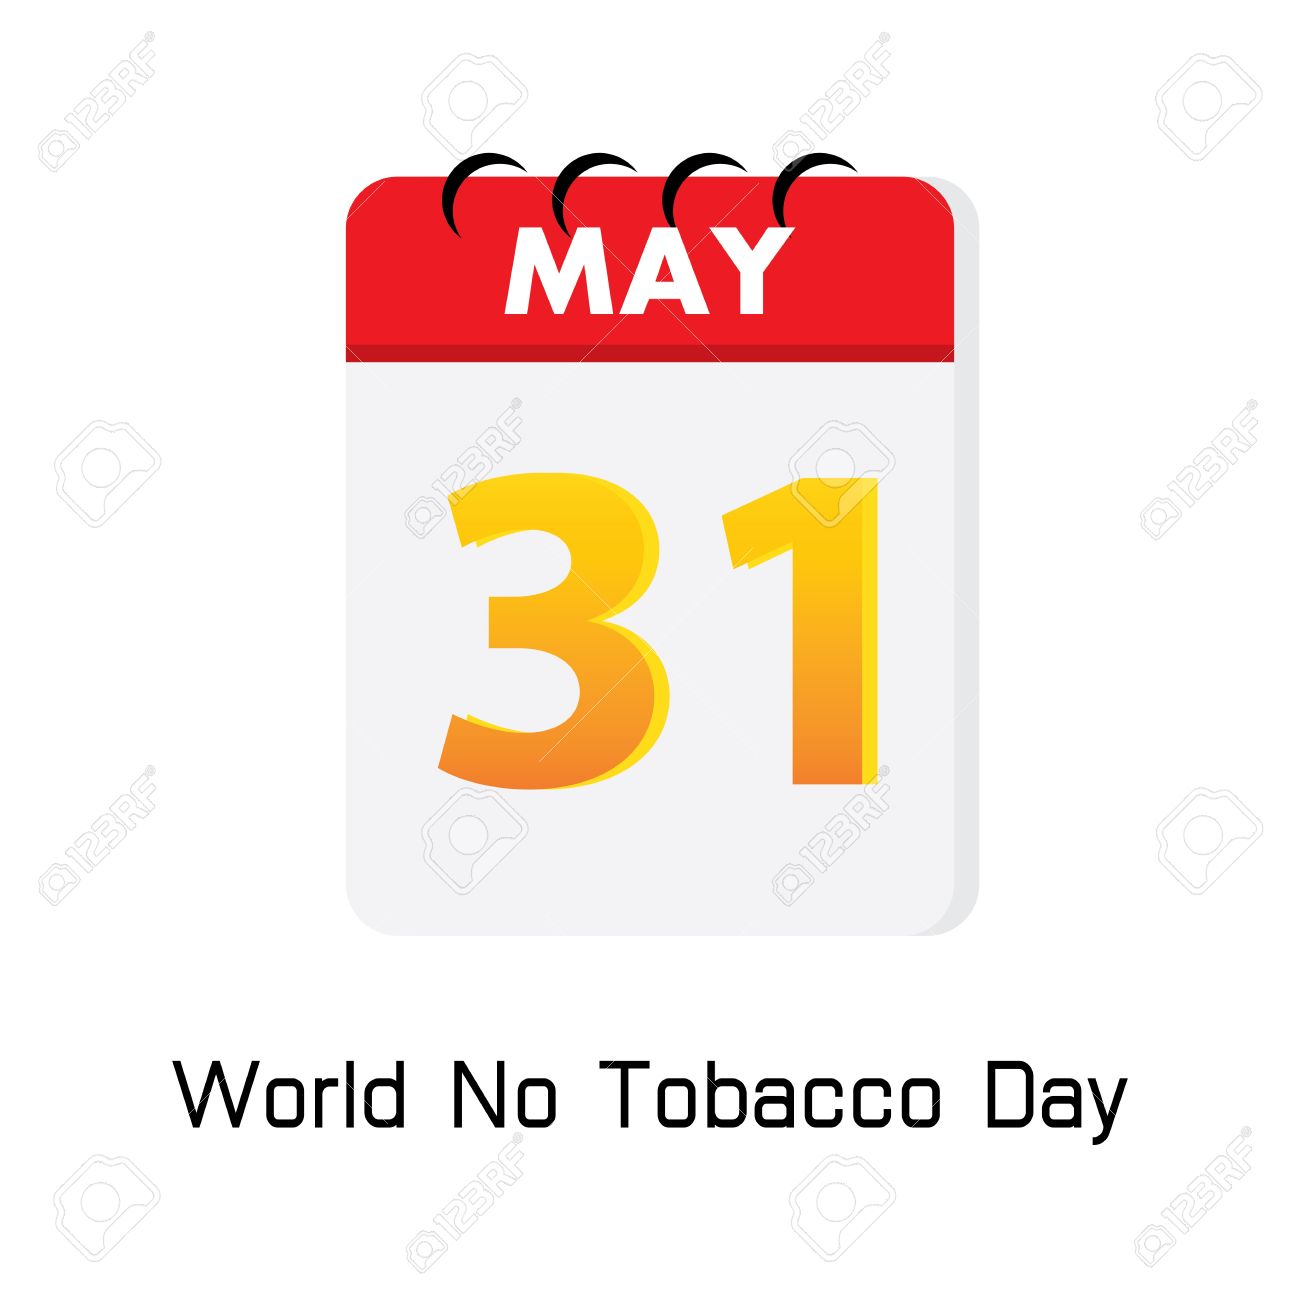 May 31 World No Tobacco Day Calendar